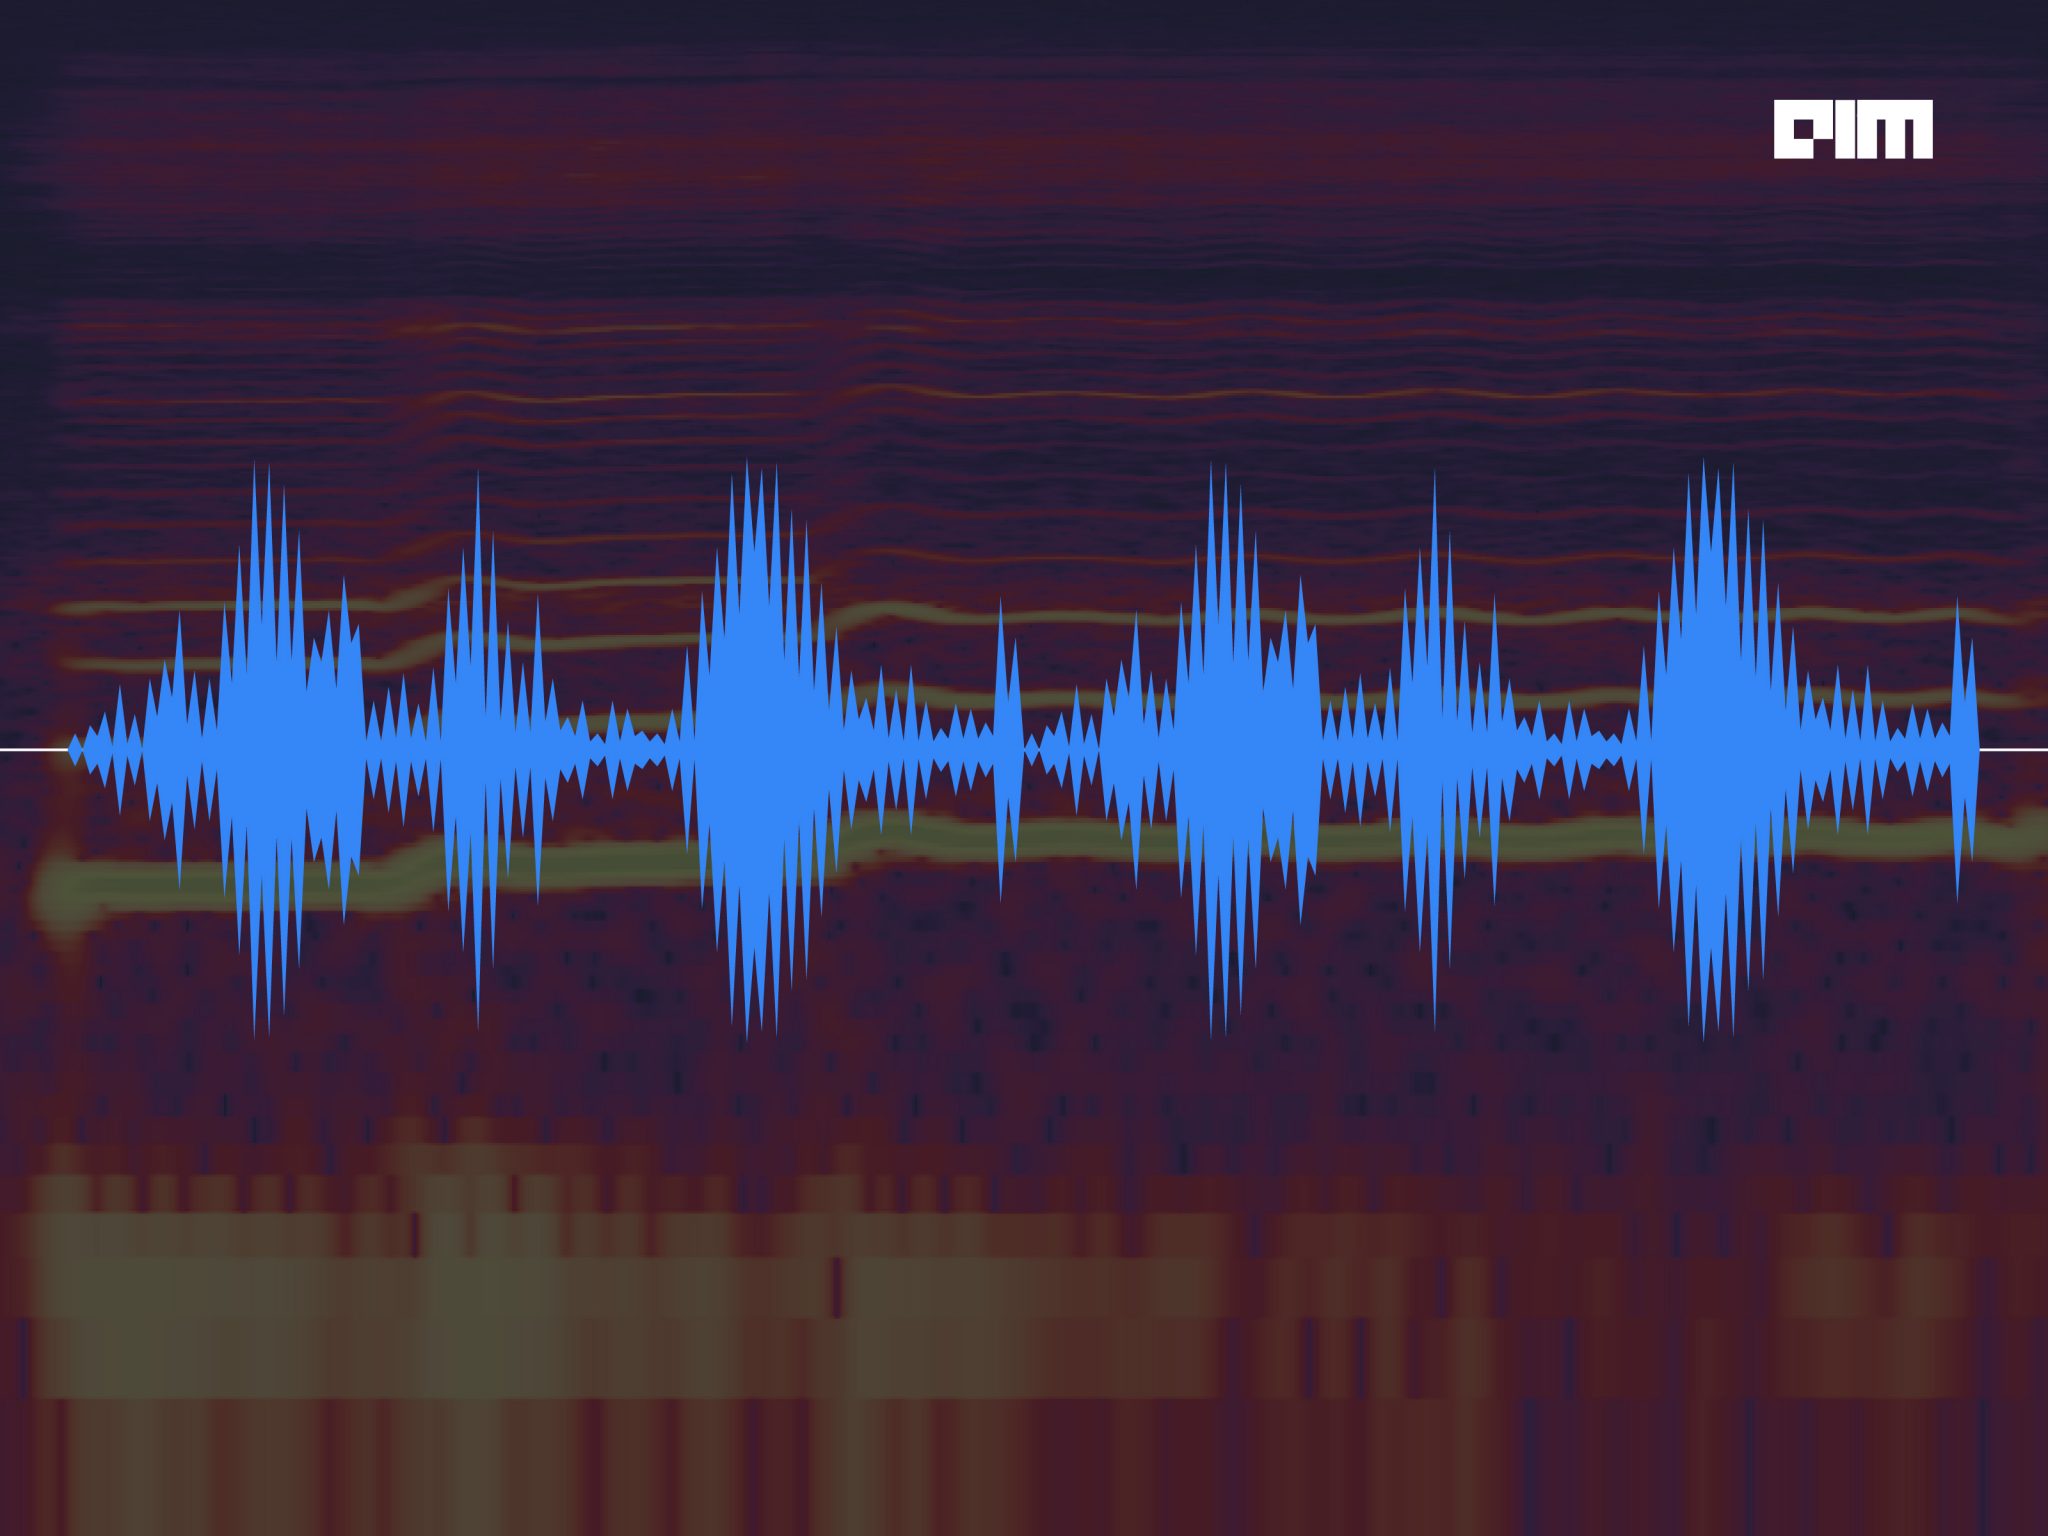 audio spectrum music visualizer download